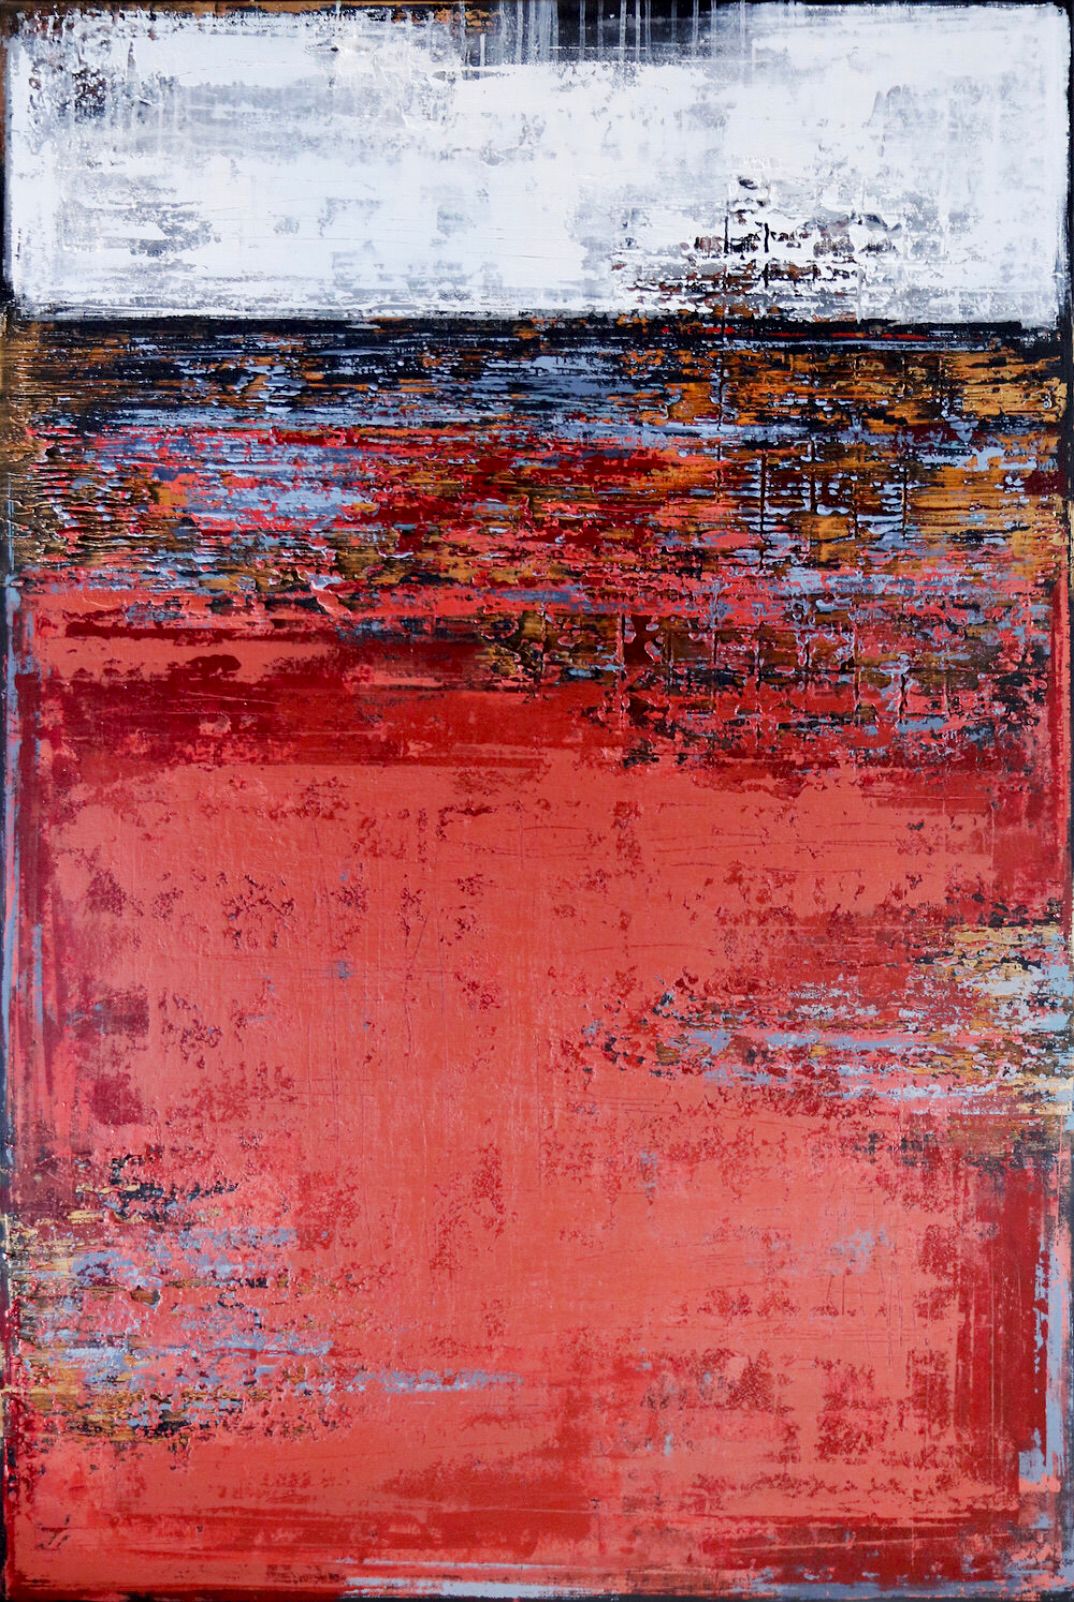 Il dipinto astratto "FADED RED" di Inez Froehlich è dominato dai colori rosso mattone, bianco, nero, blu, oro. Lo stile del dipinto è shabby chic, stile industriale, vintage, retrò, boho, rustico.